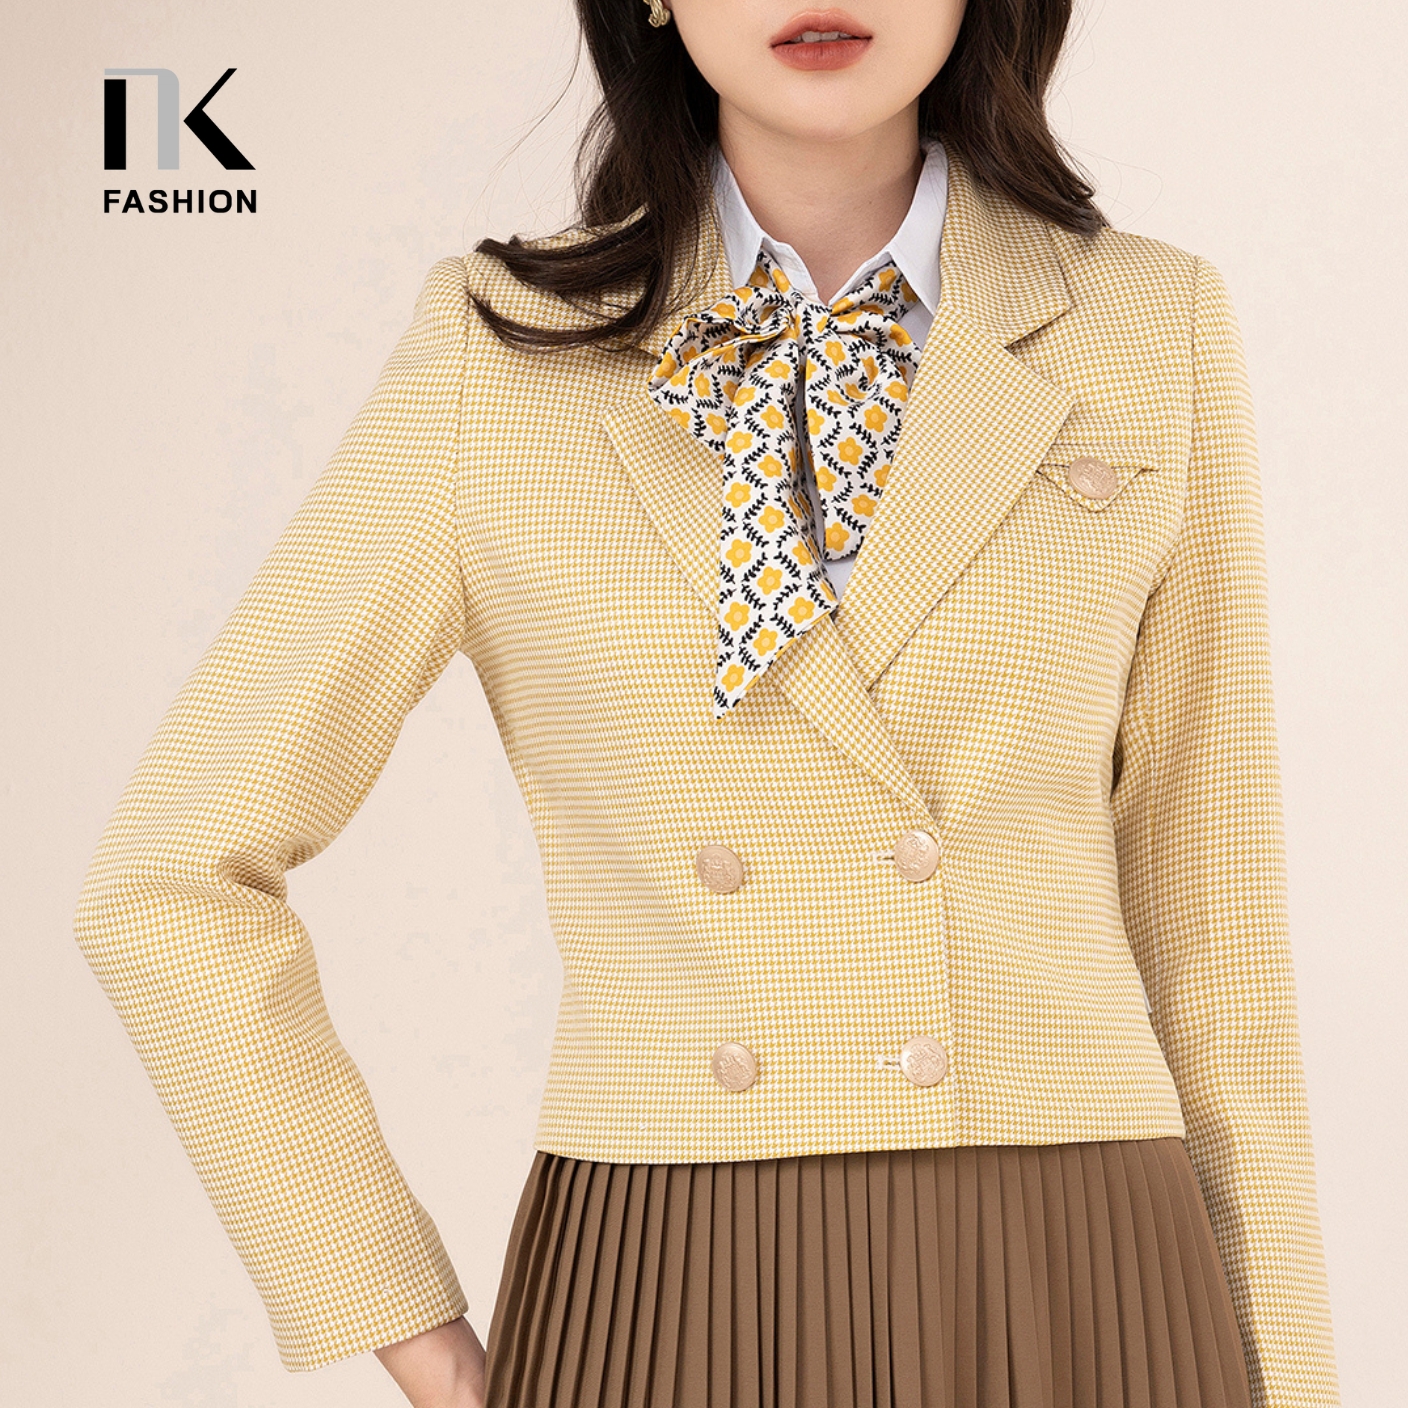 Áo Vest Nữ Công Sở Hàn Quốc NK Fashion Croptop Dáng Ngắn 5 Cúc Đồng Thời Thượng Chất Liệu Cao Cấp NKAK2209002